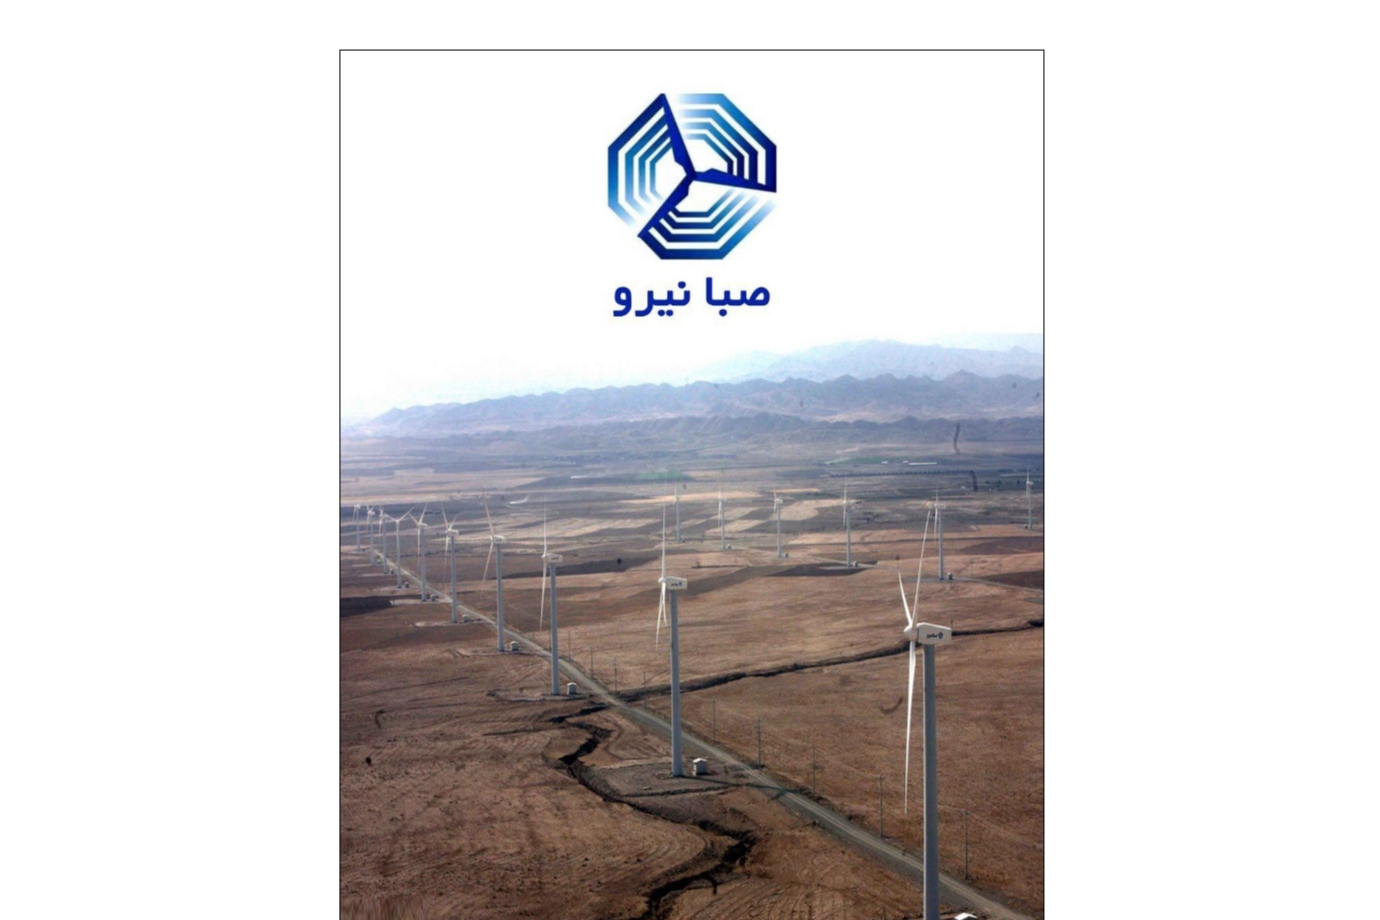 صبانیرو، اولین تولیدکننده توربین های بادی در کشور و منطقه خاورمیانه